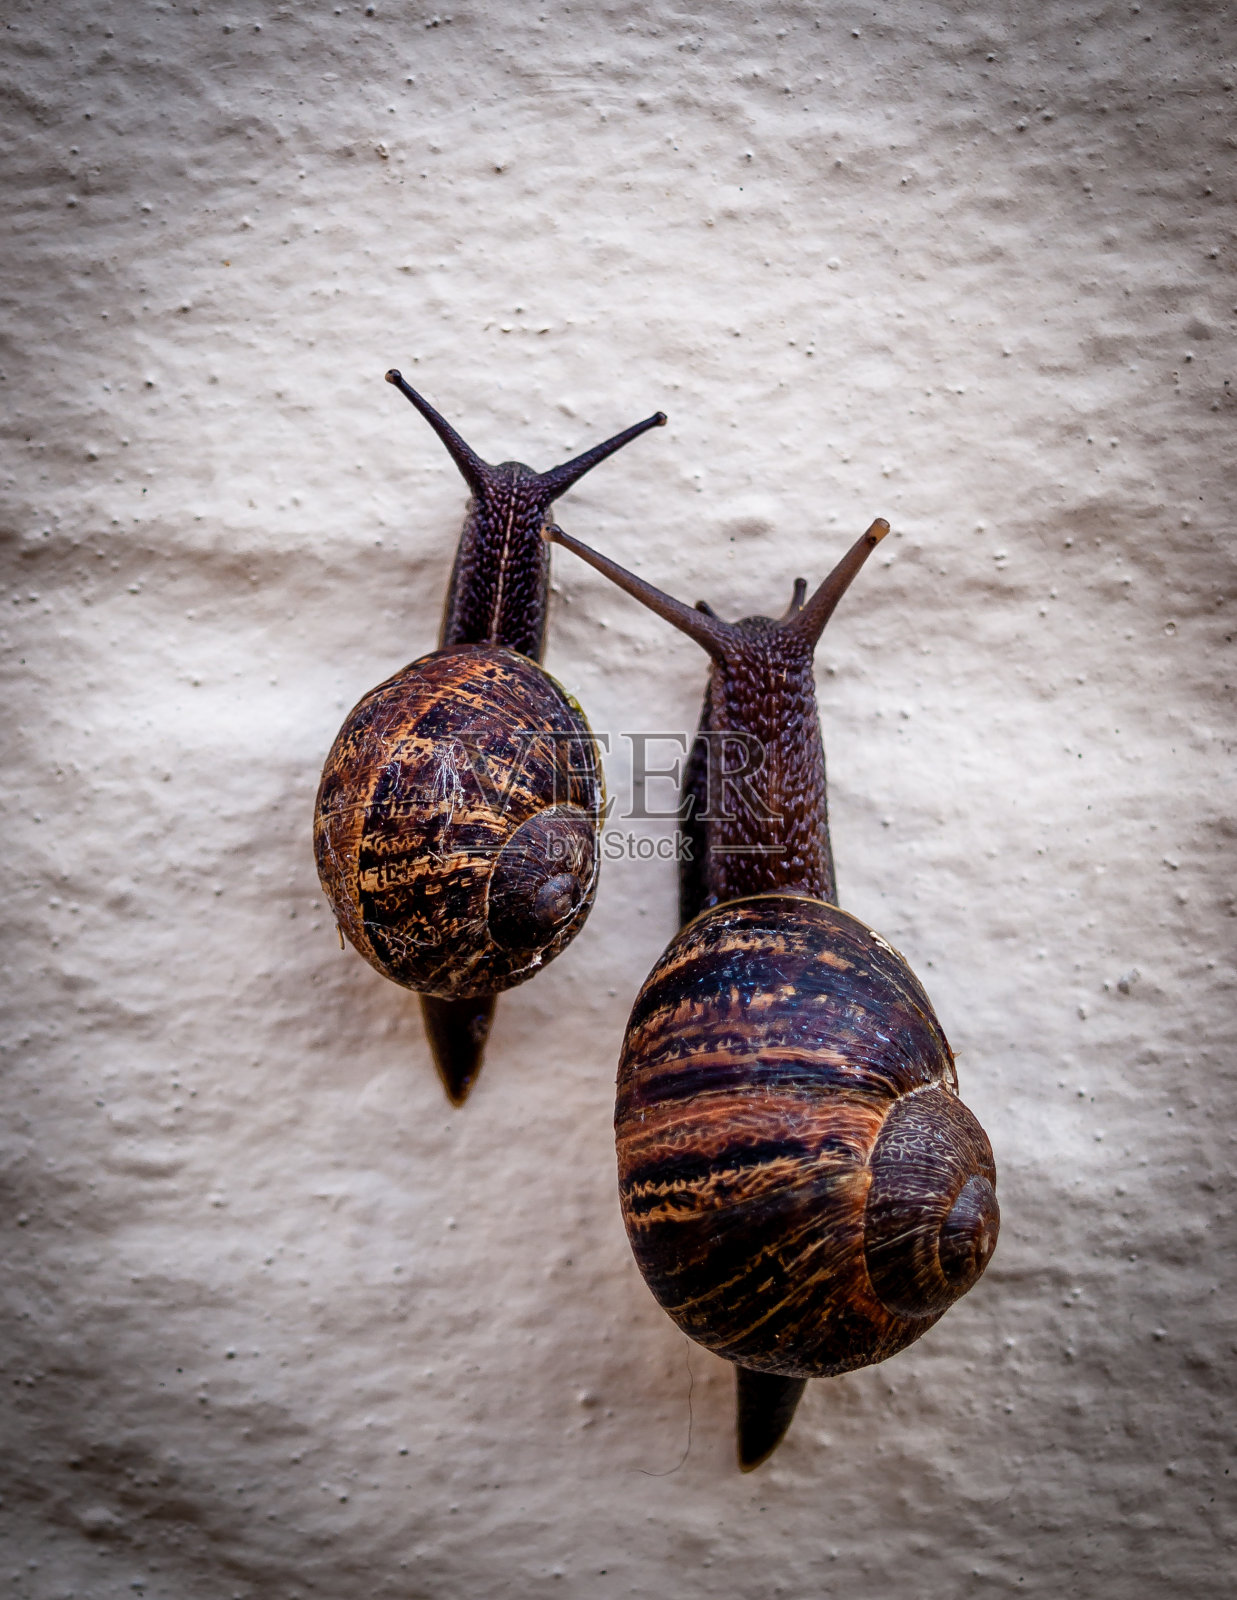 蜗牛的速度照片摄影图片